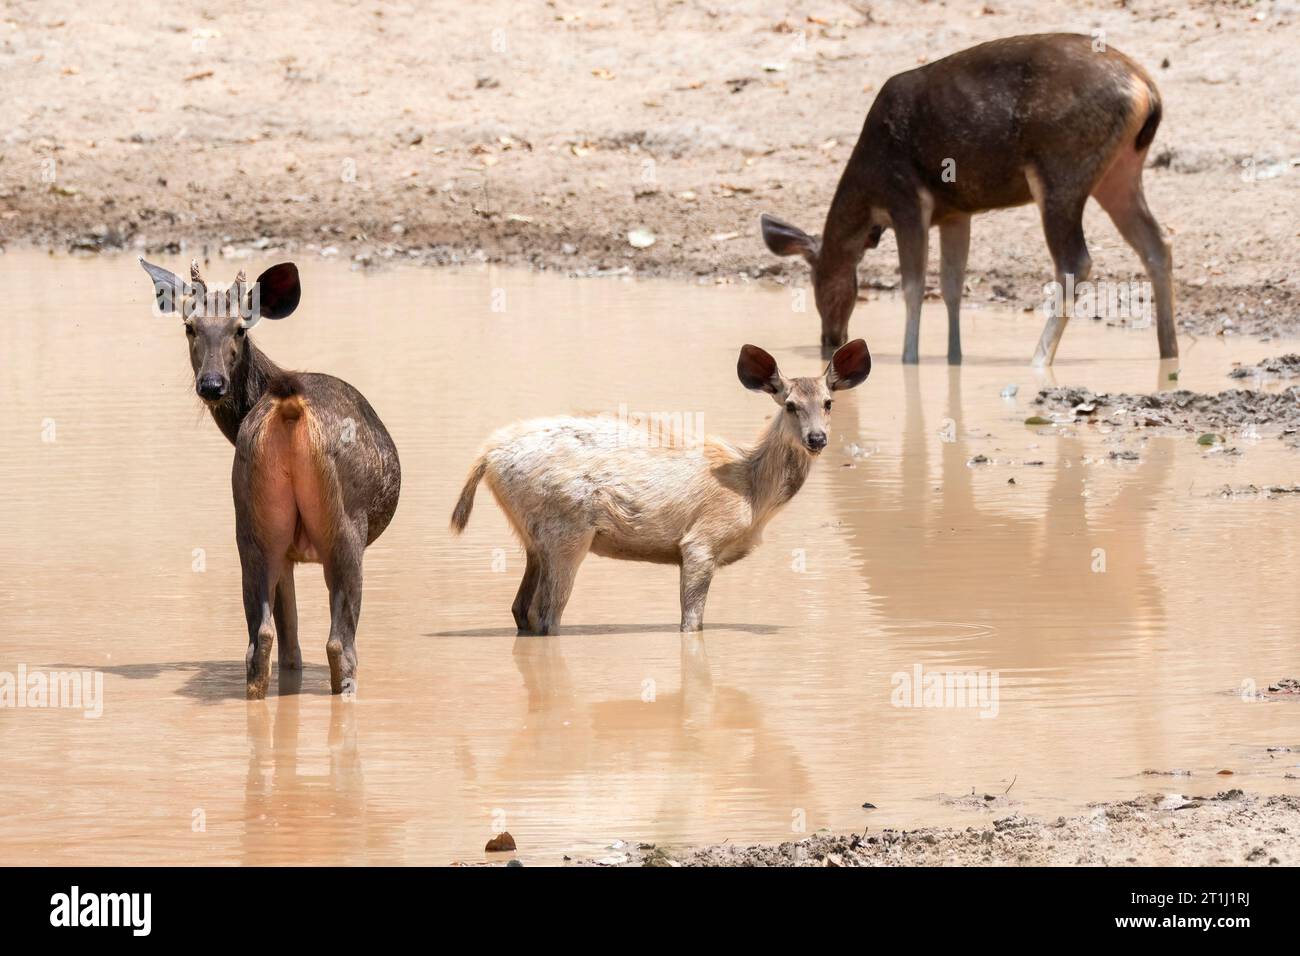 Un cerf sambar profitant d'un nouveau bain frais dans un trou d'eau au milieu de la réserve de tigre de Pench pendant un safari animalier Banque D'Images